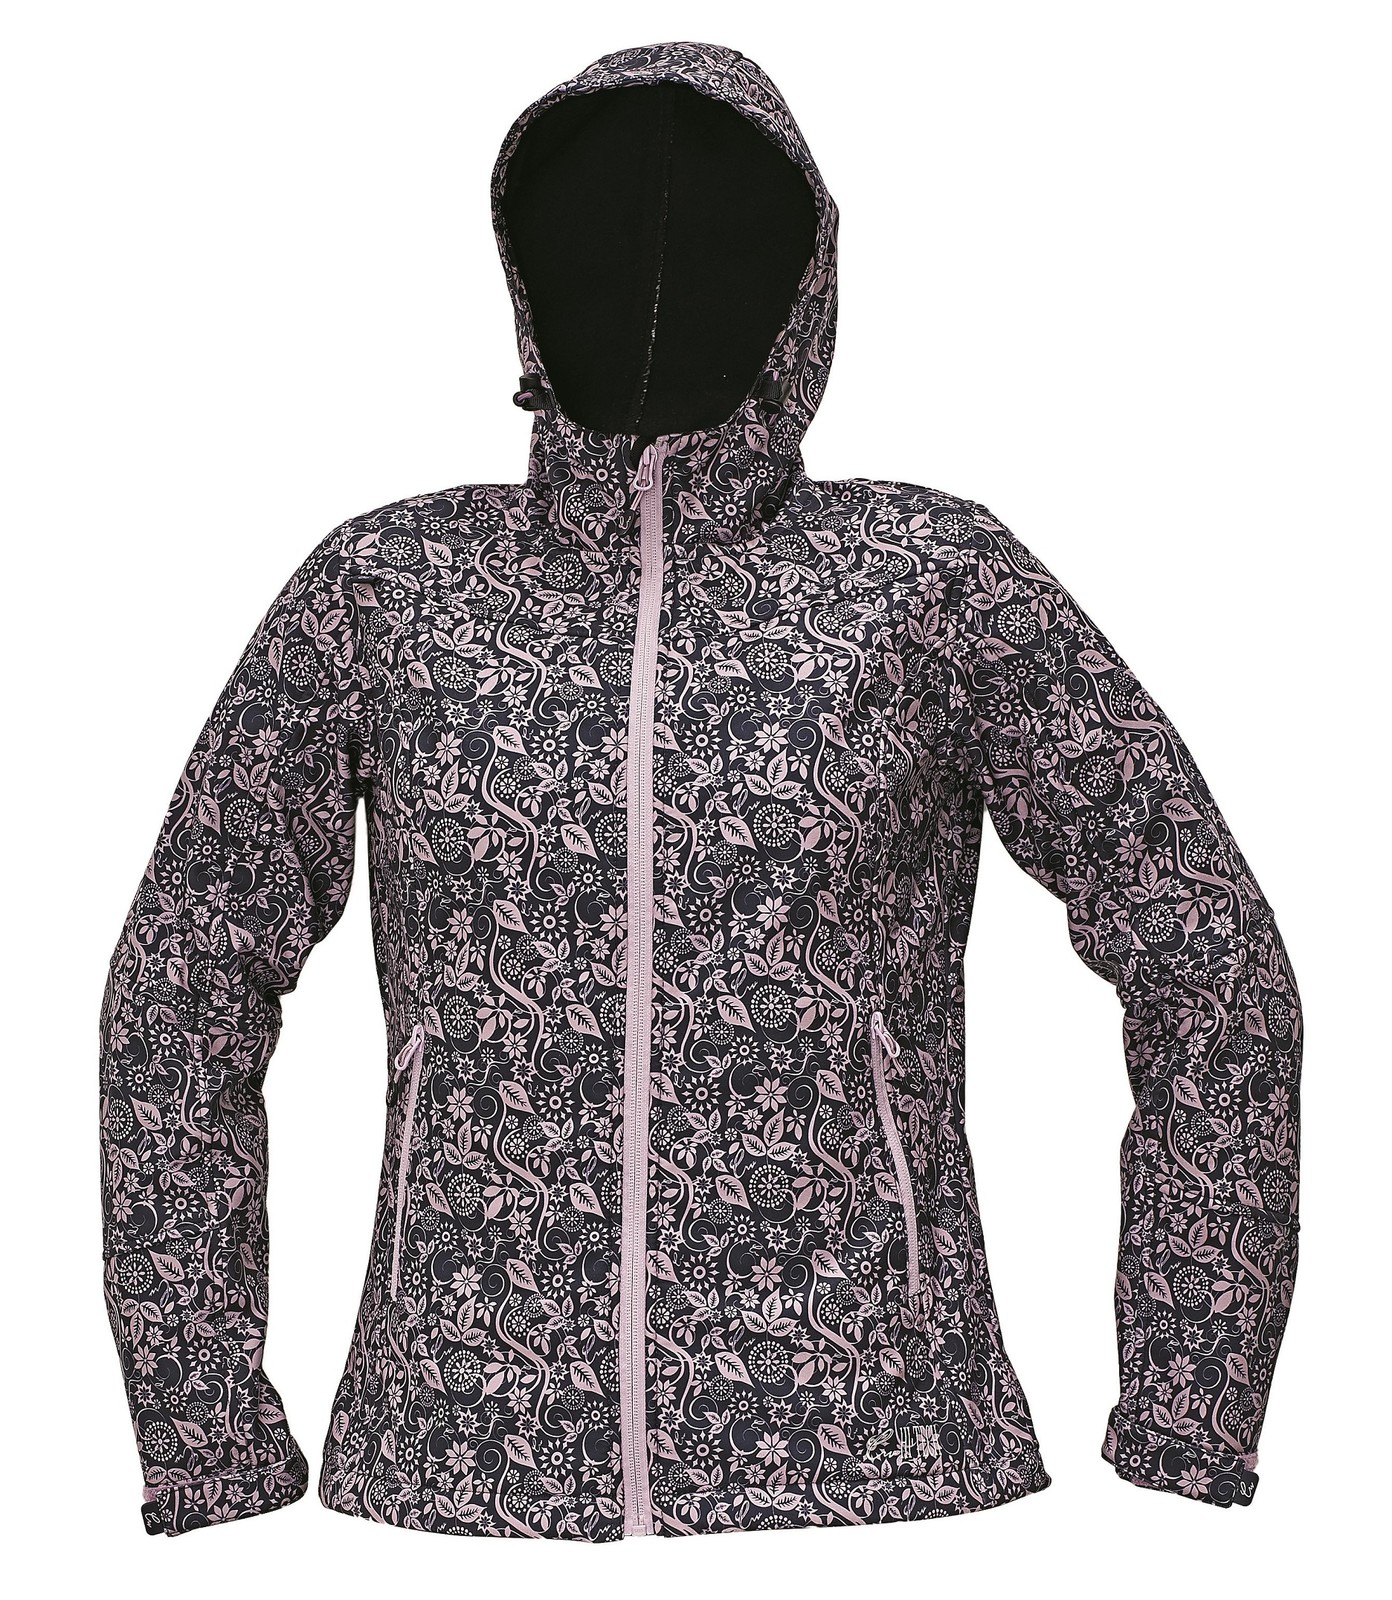 Softshellová bunda Yowie Flower dámska - veľkosť: L, farba: navy/fialová